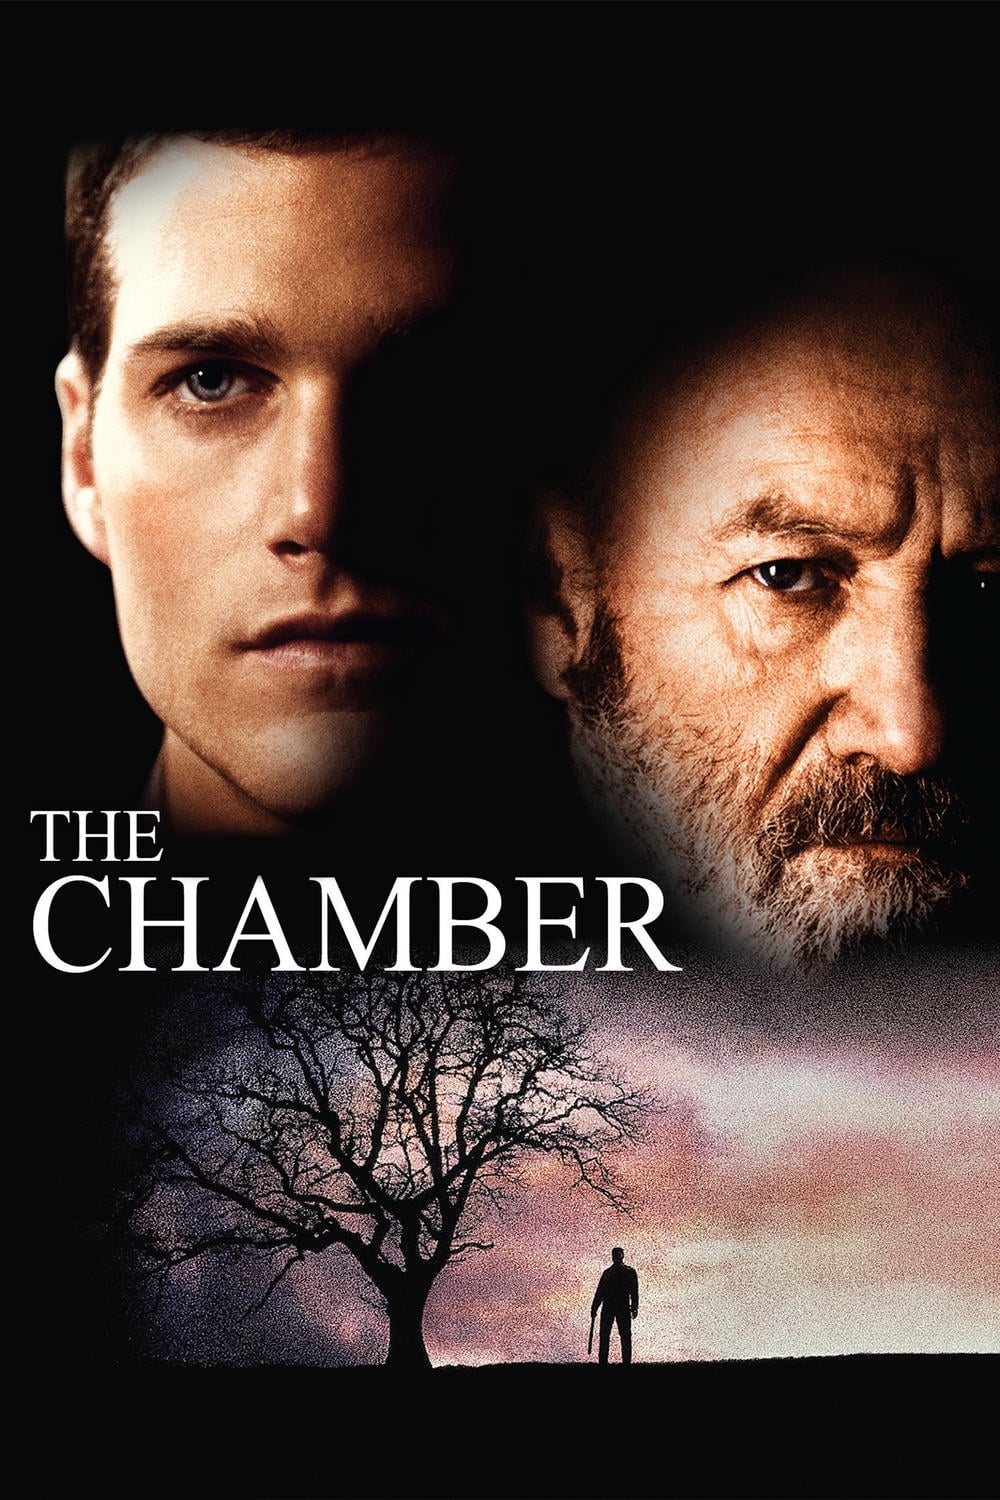 Die Kammer (1996)